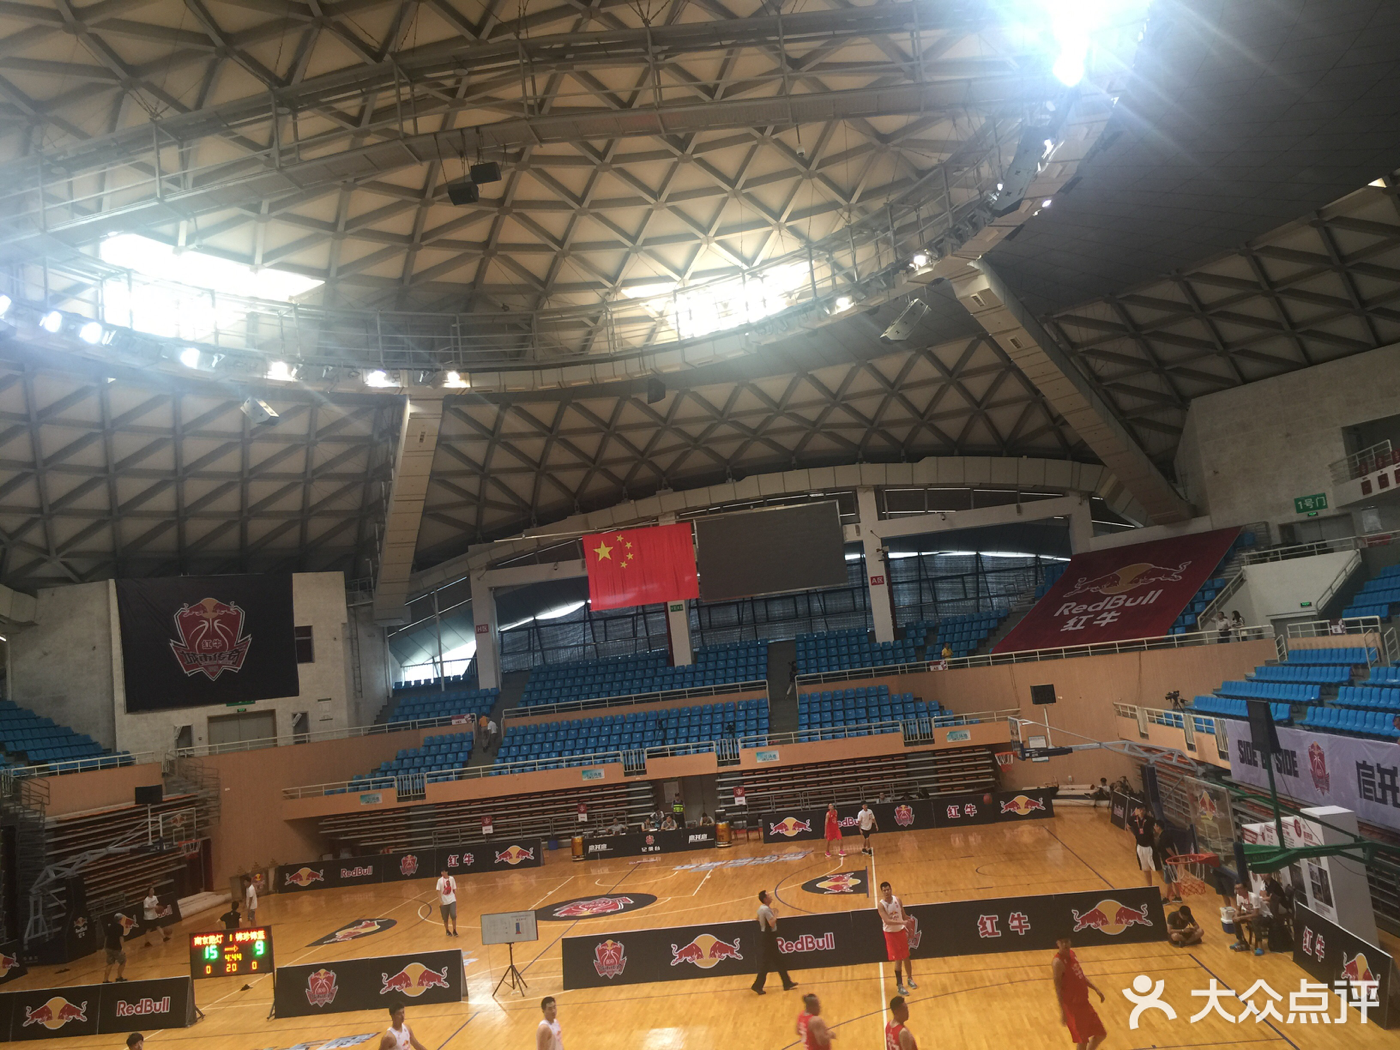         武汉体育学院-篮球馆